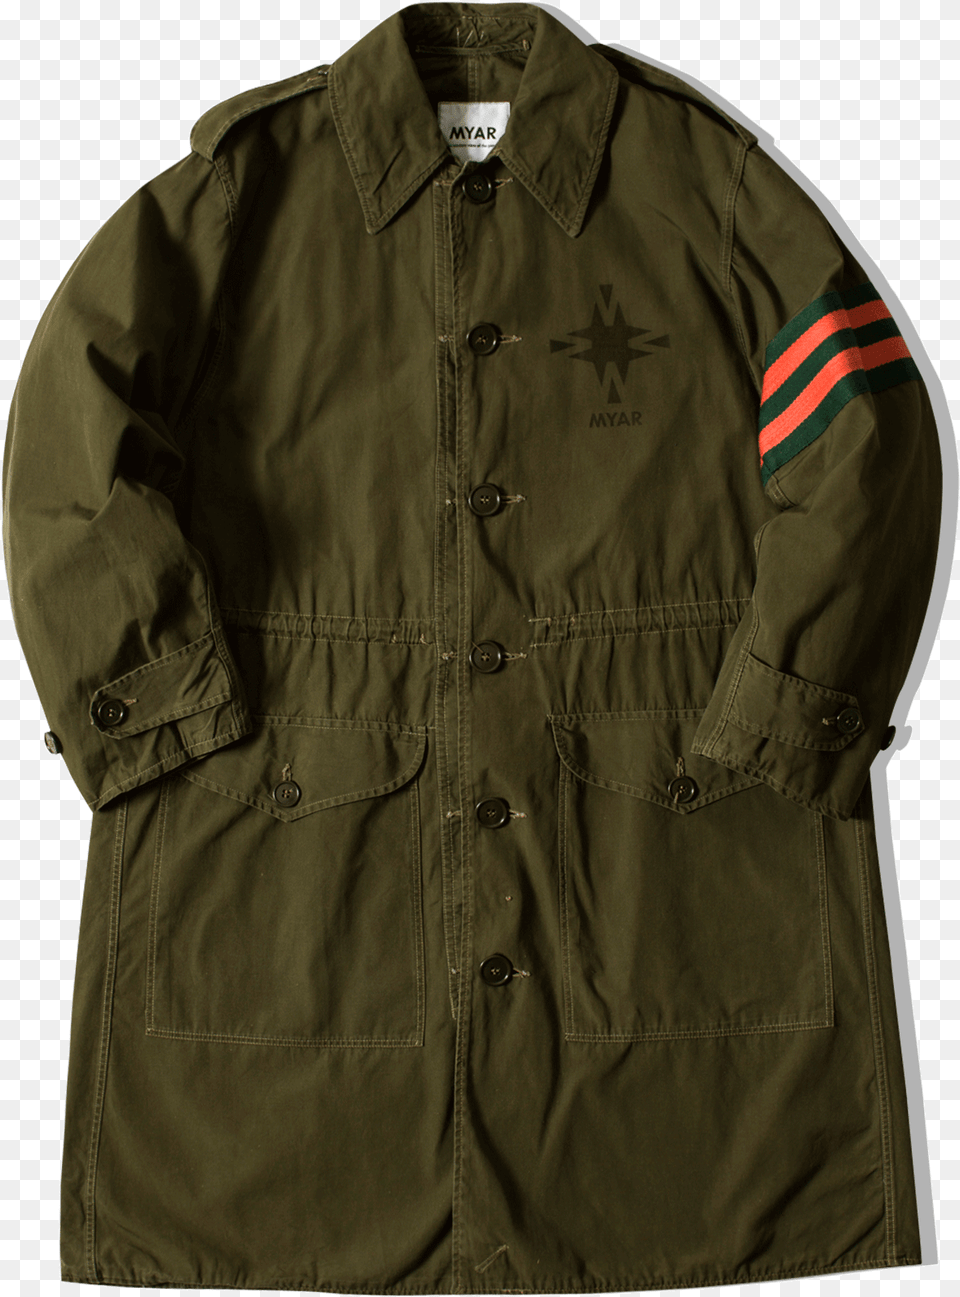 Myar Coats Amp Jackets Noc70 Green Noc70 Pocket, Clothing, Coat, Jacket, Overcoat Free Png Download